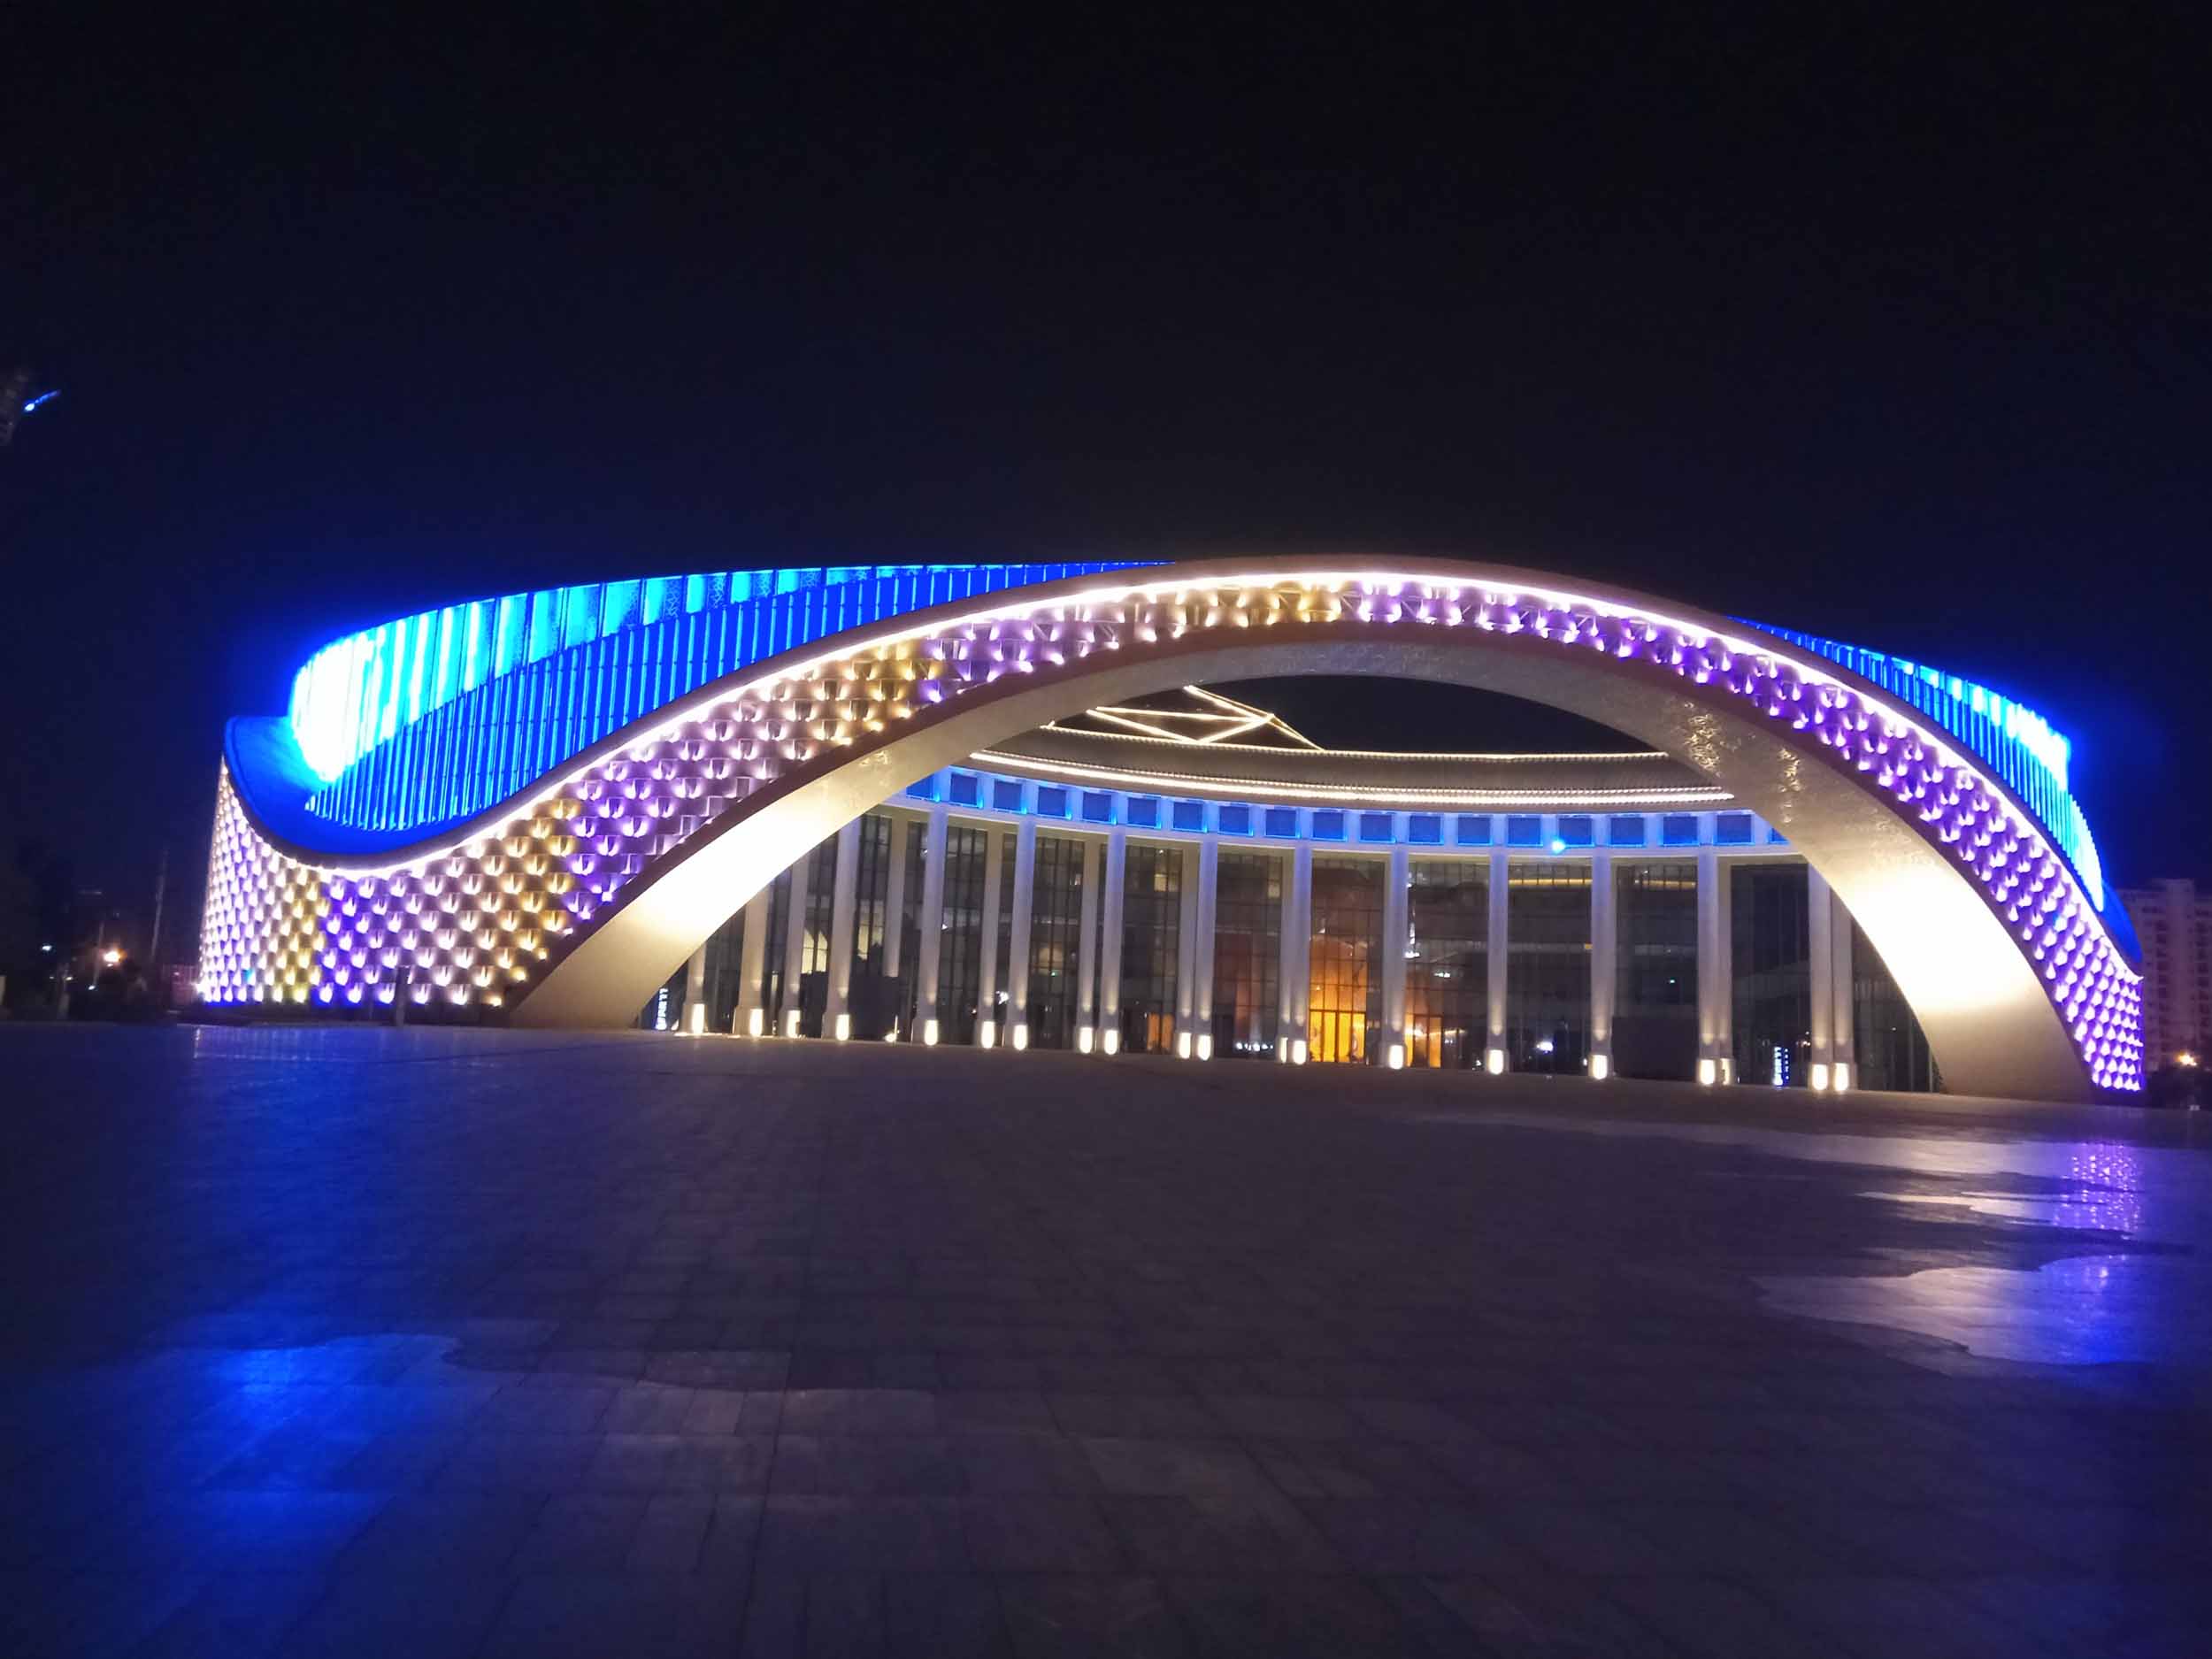 云南文化艺术中心(云南大剧院)建设项目灯光亮化工程--2018神灯奖申报工程